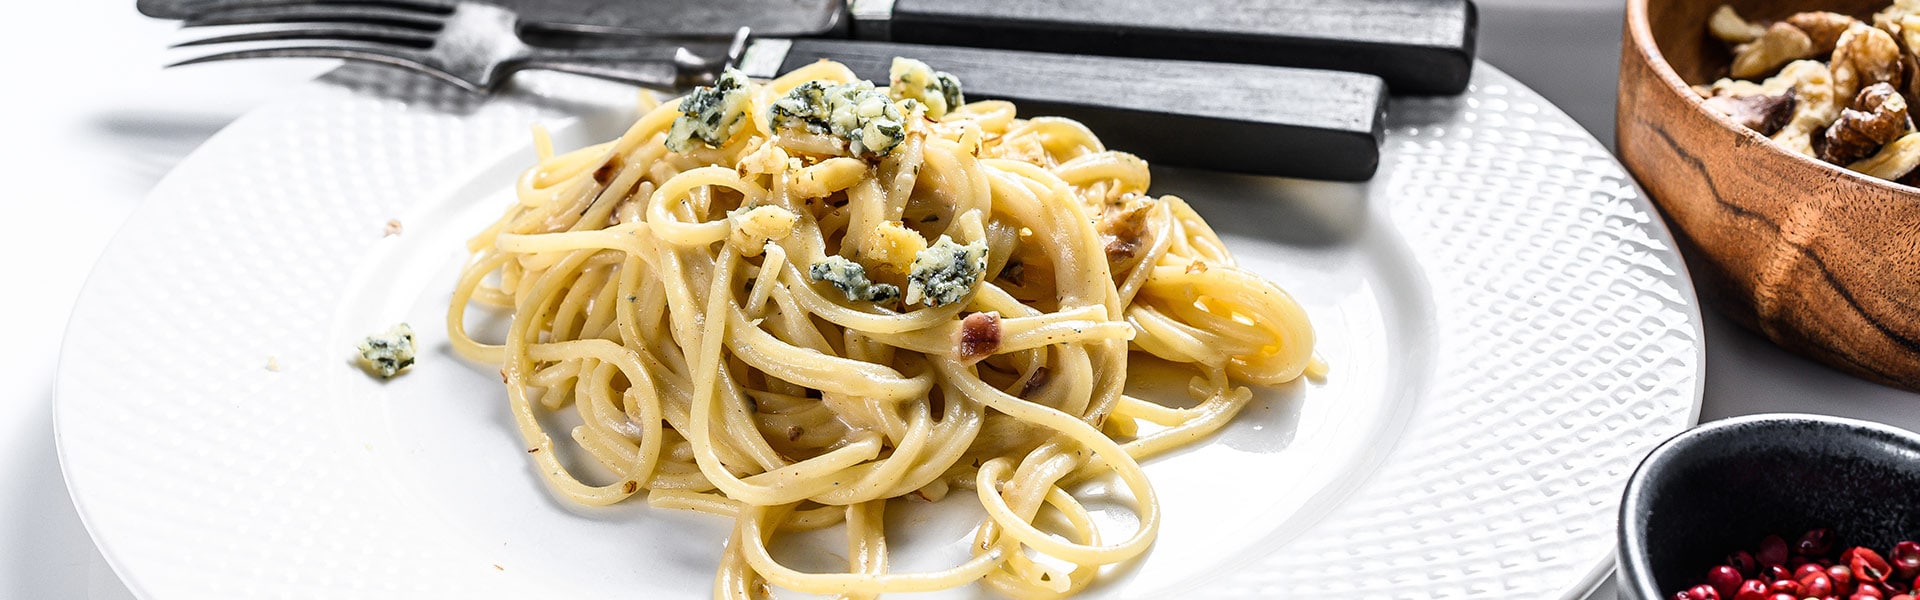 Spaghetti mit Gorgonzola und Walnüssen